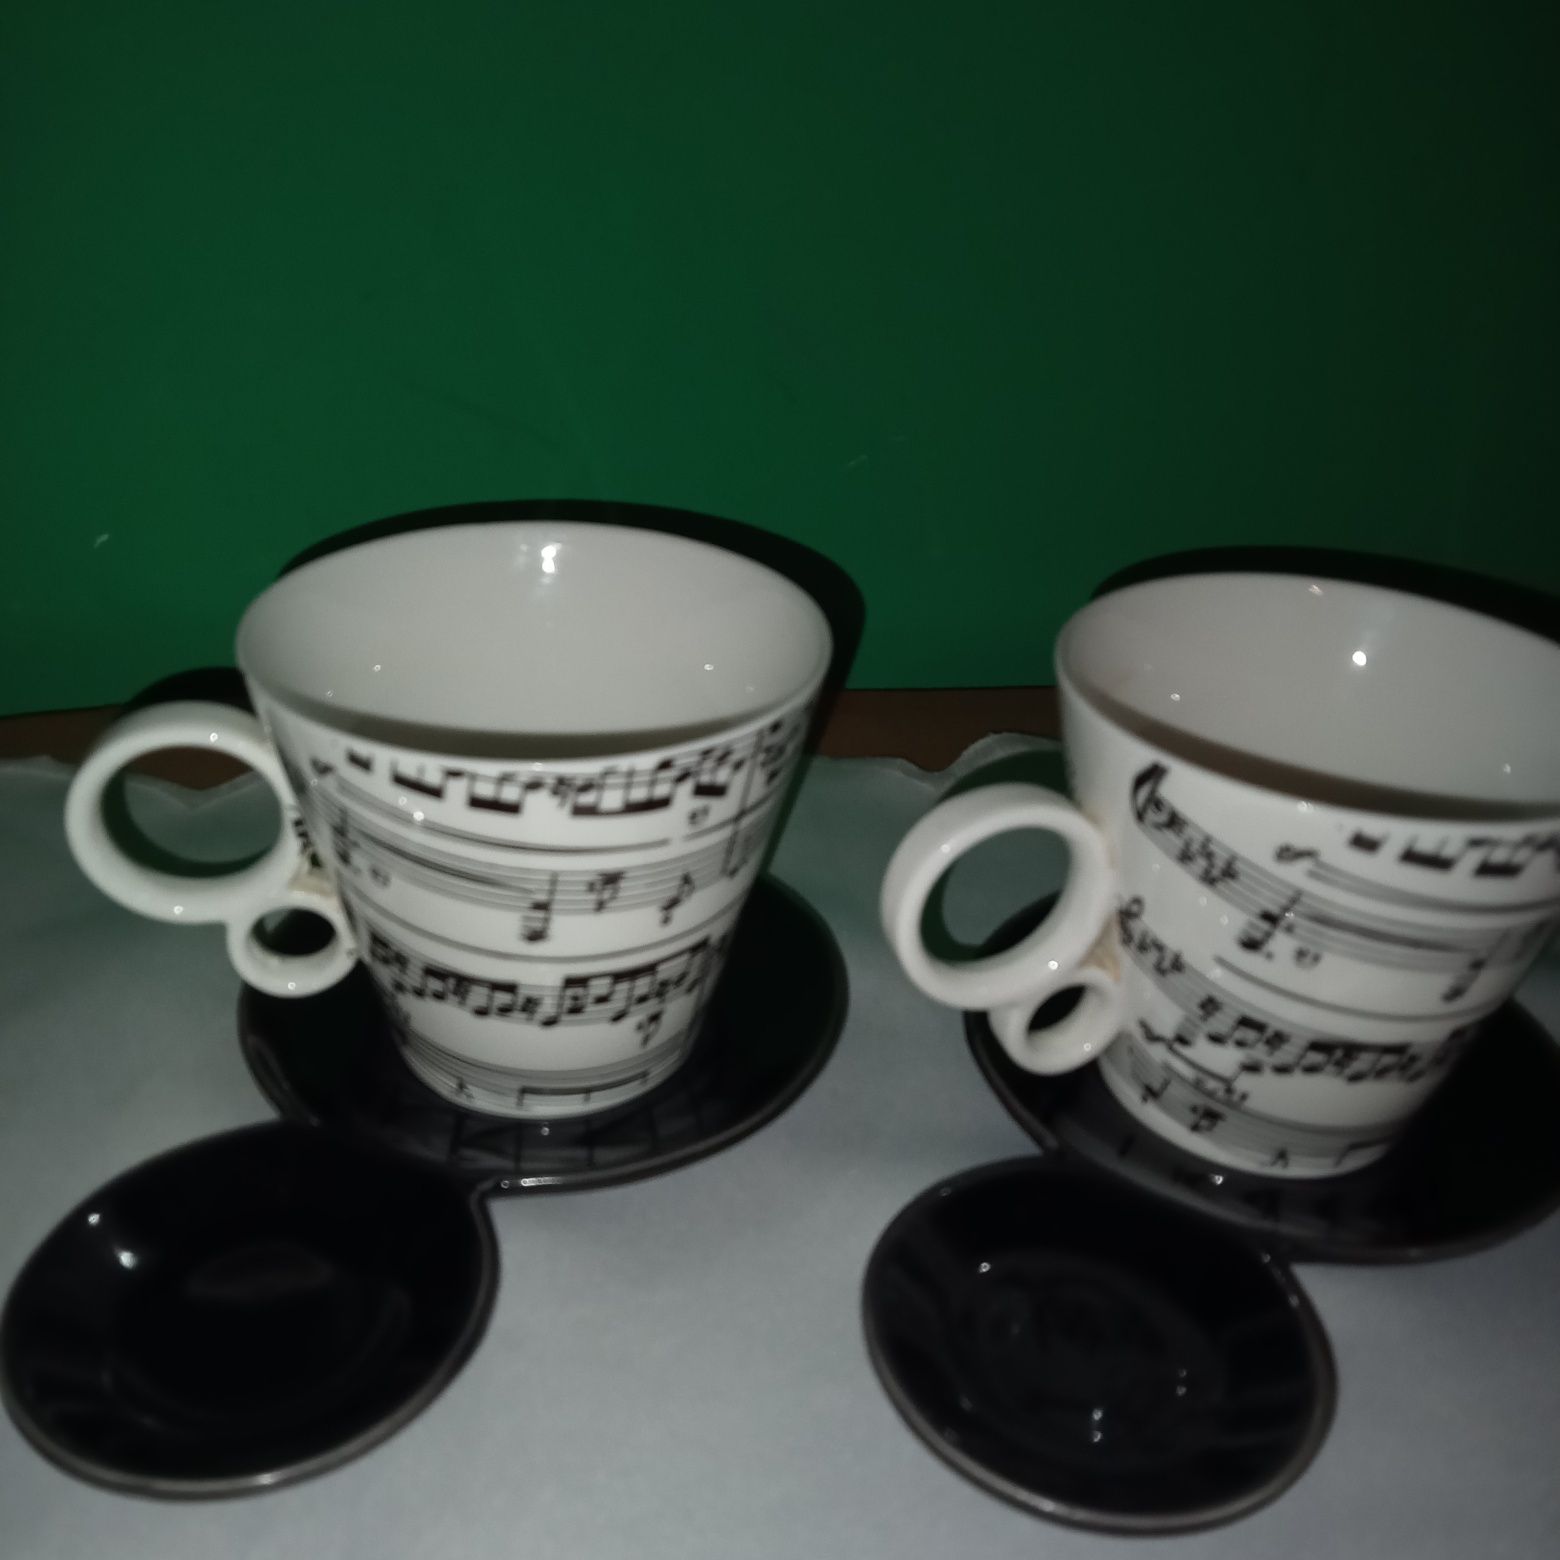 Dwa kubki do herbaty wzor nutki,z podstawkami na zużyta saszetkę herba